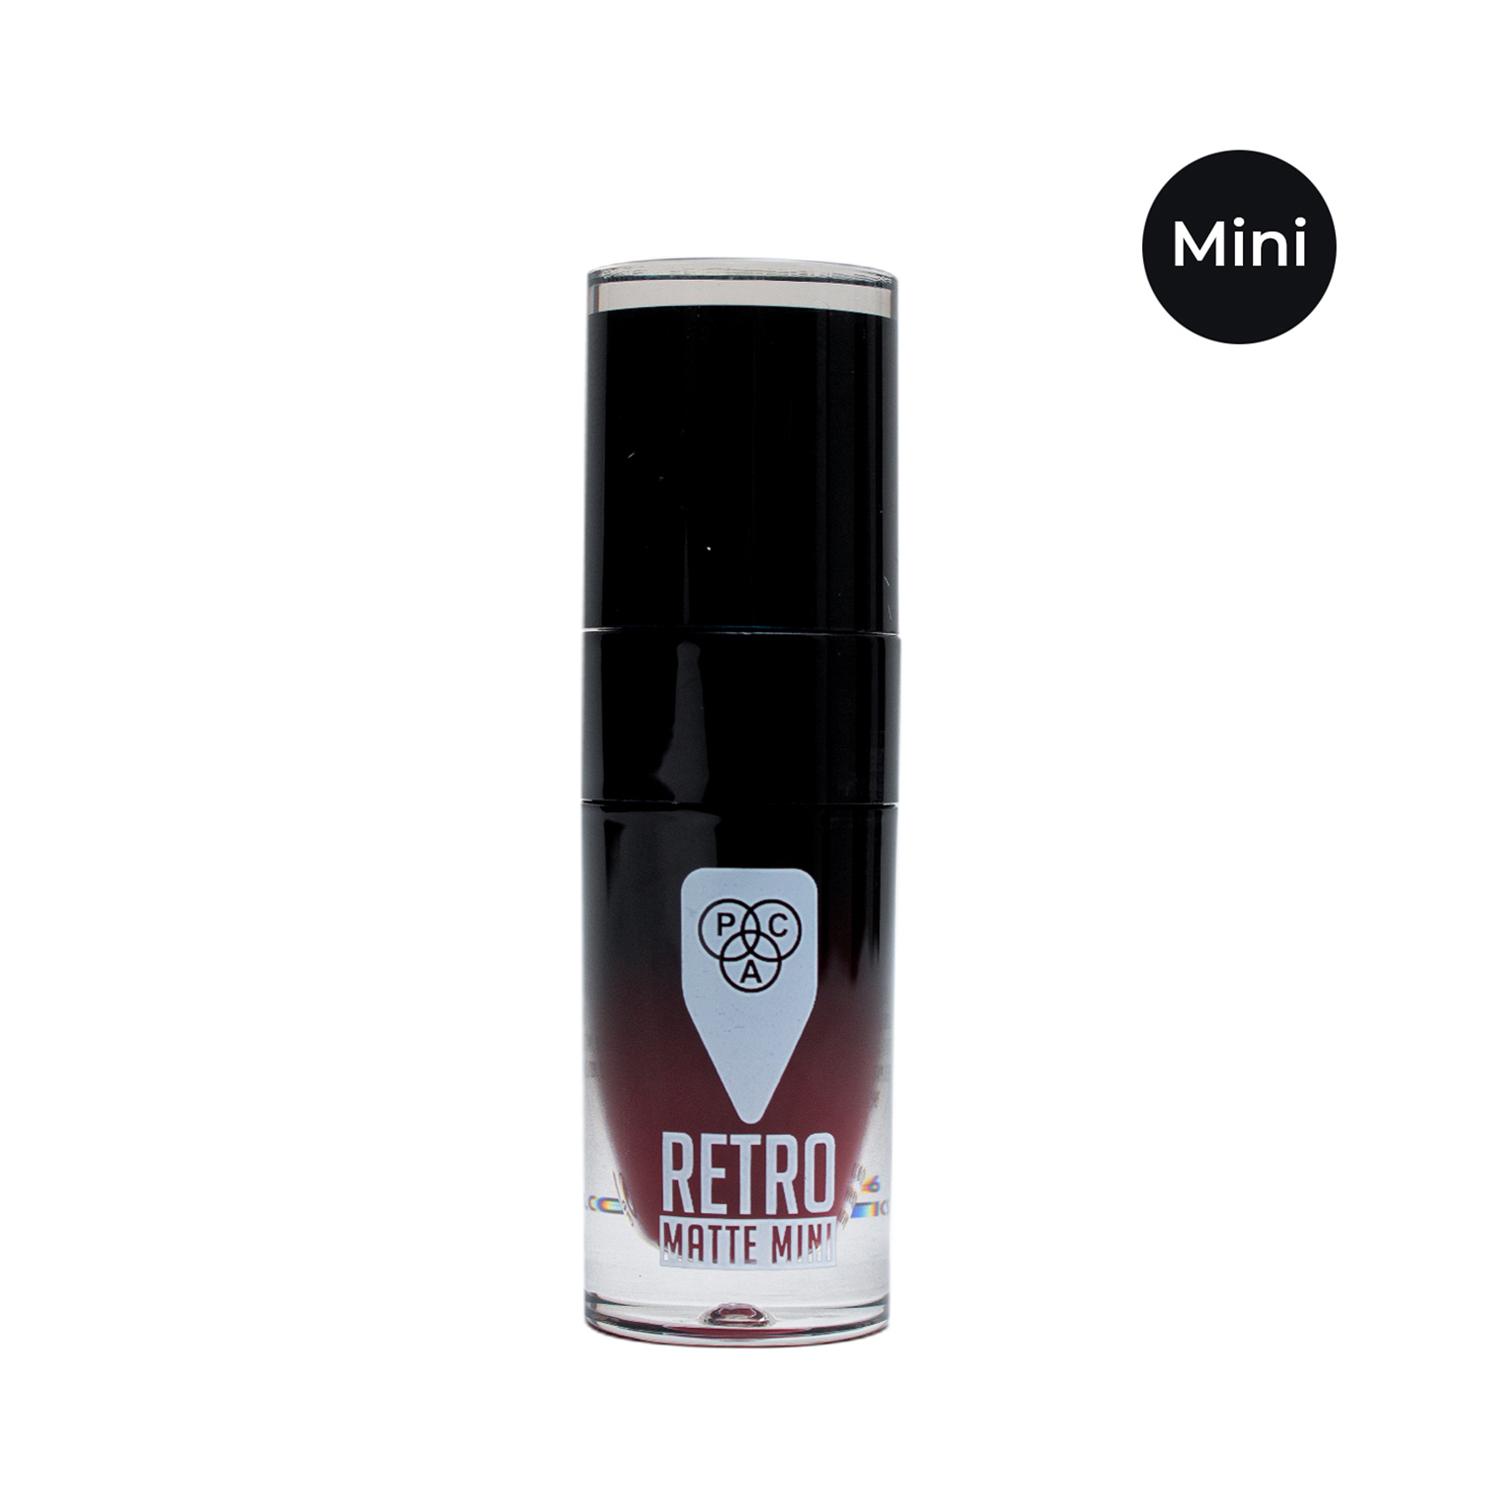 PAC | PAC Retro Matte Gloss Mini Liquid Lipstick - 25 Bite (3ml)